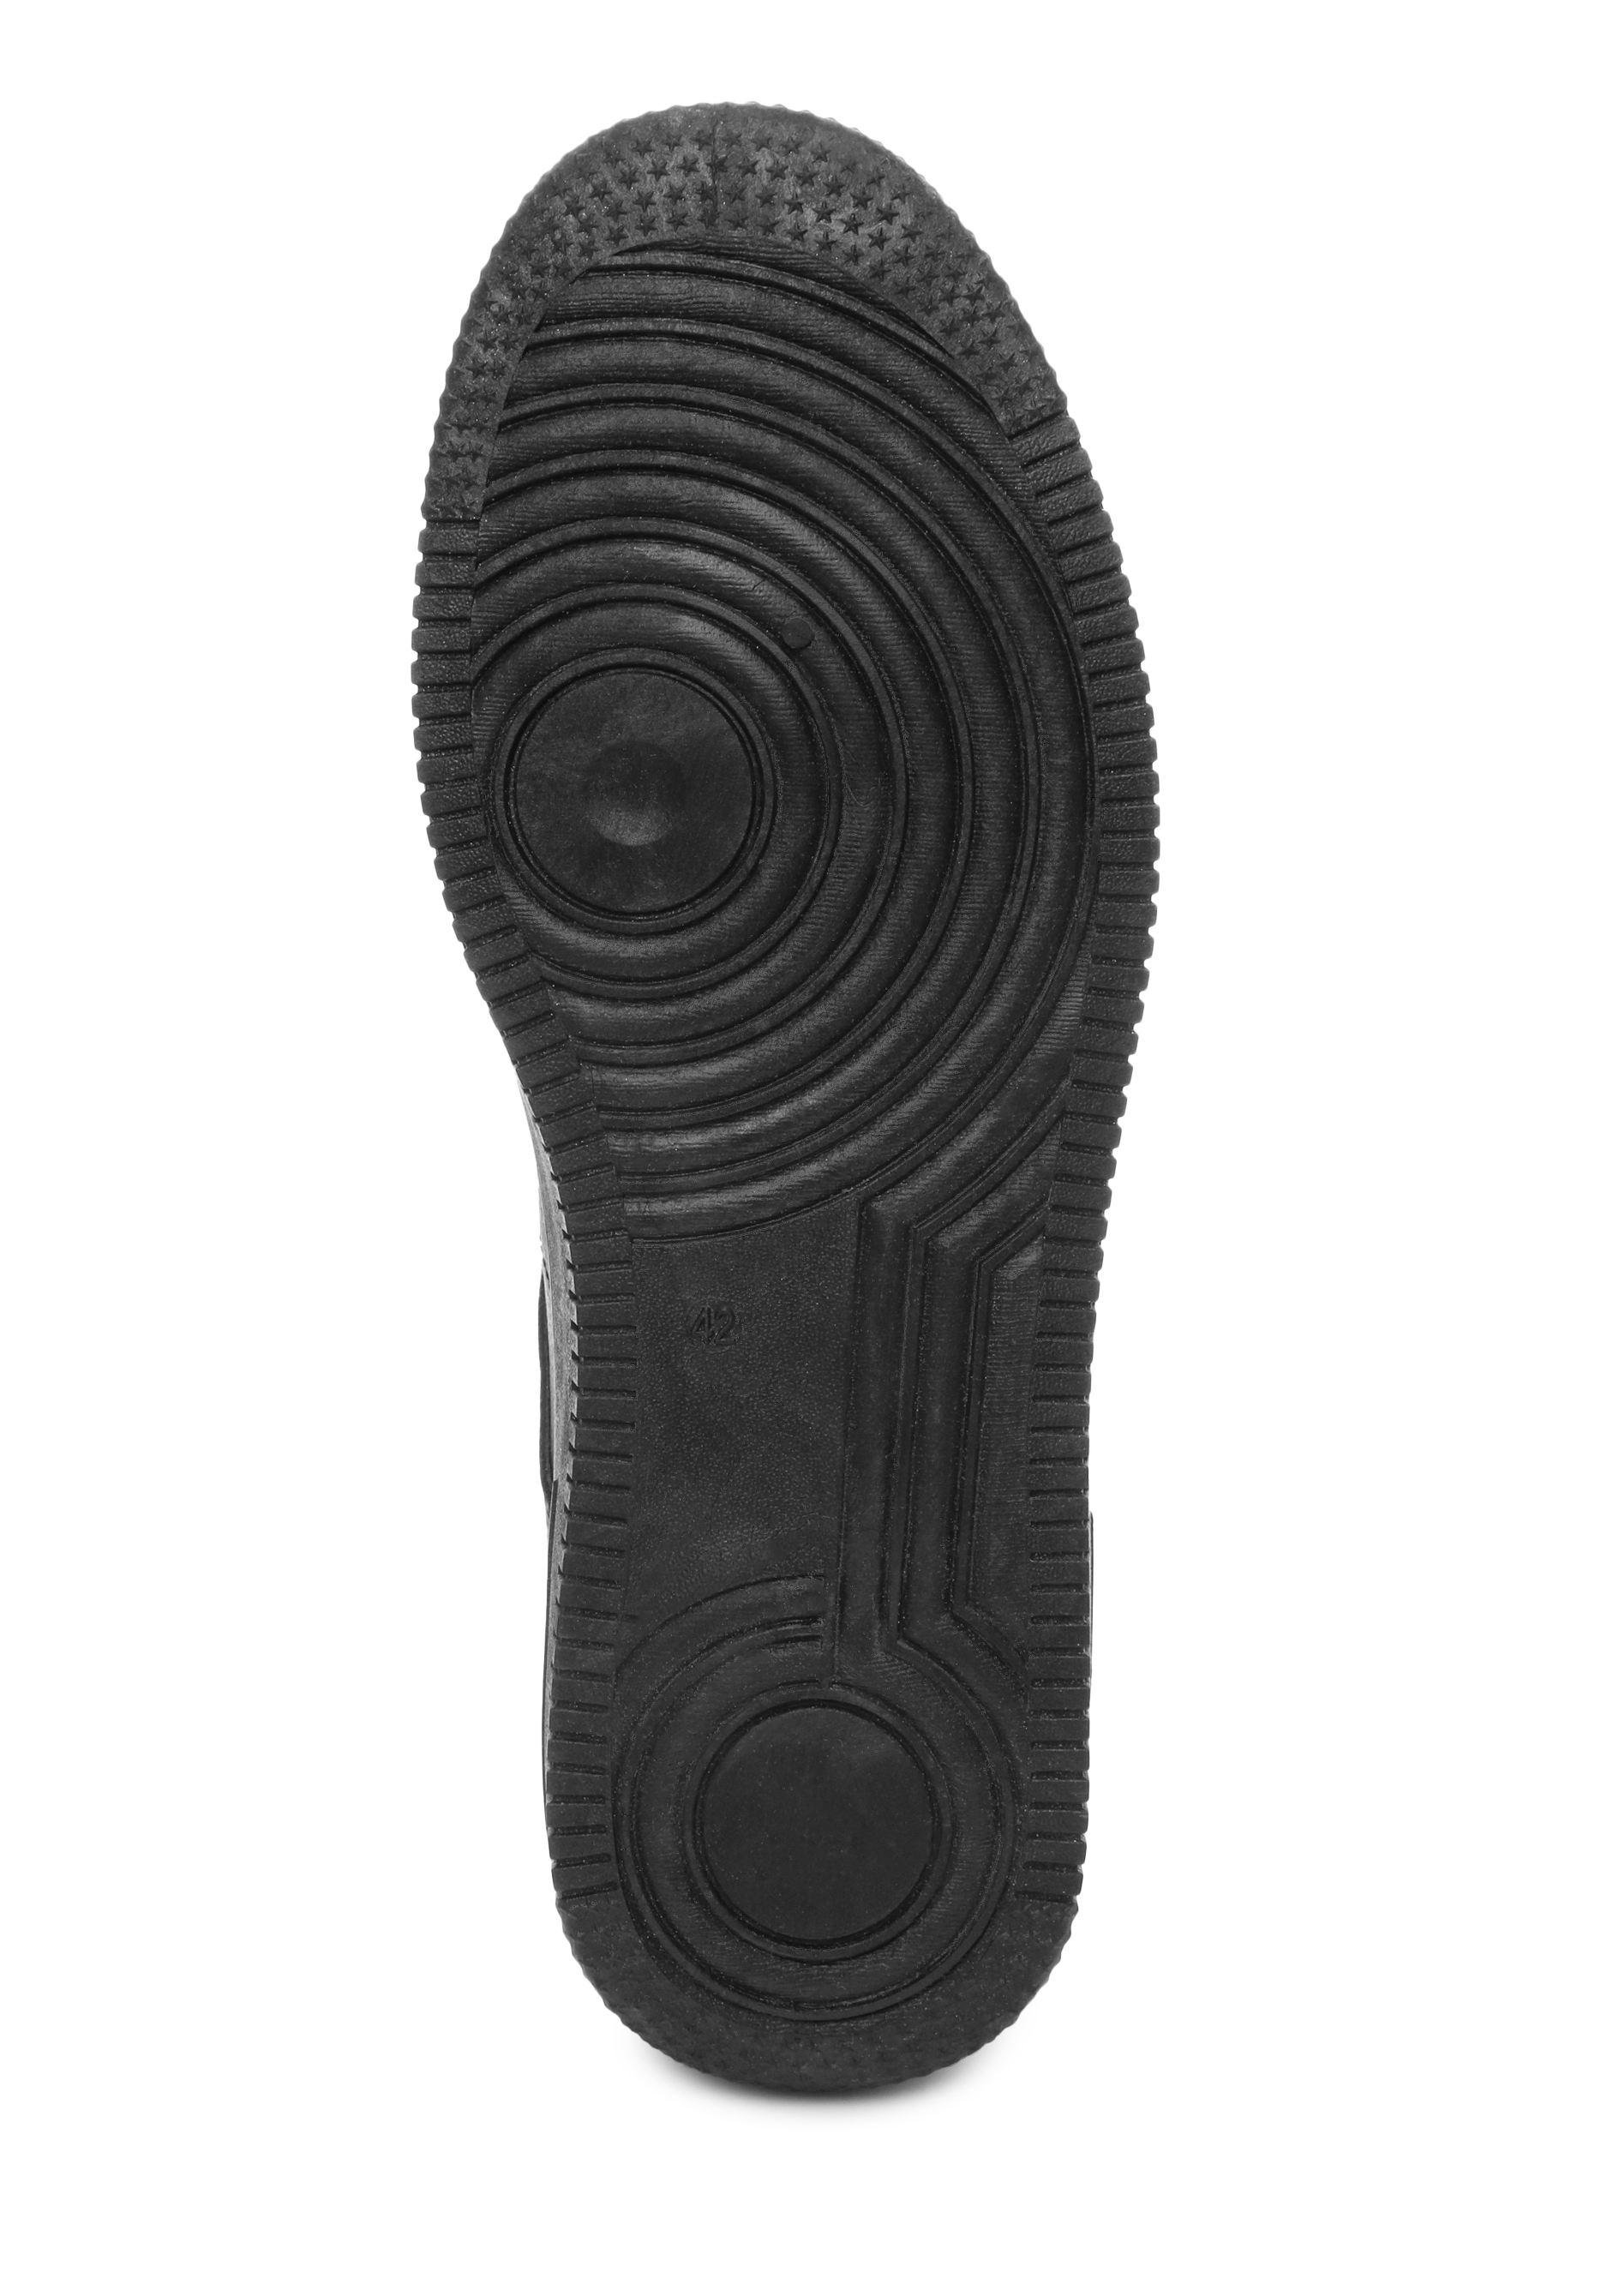 Полуботинки мужские "Рэндел" NOBARRO, размер 41, цвет черный - фото 5